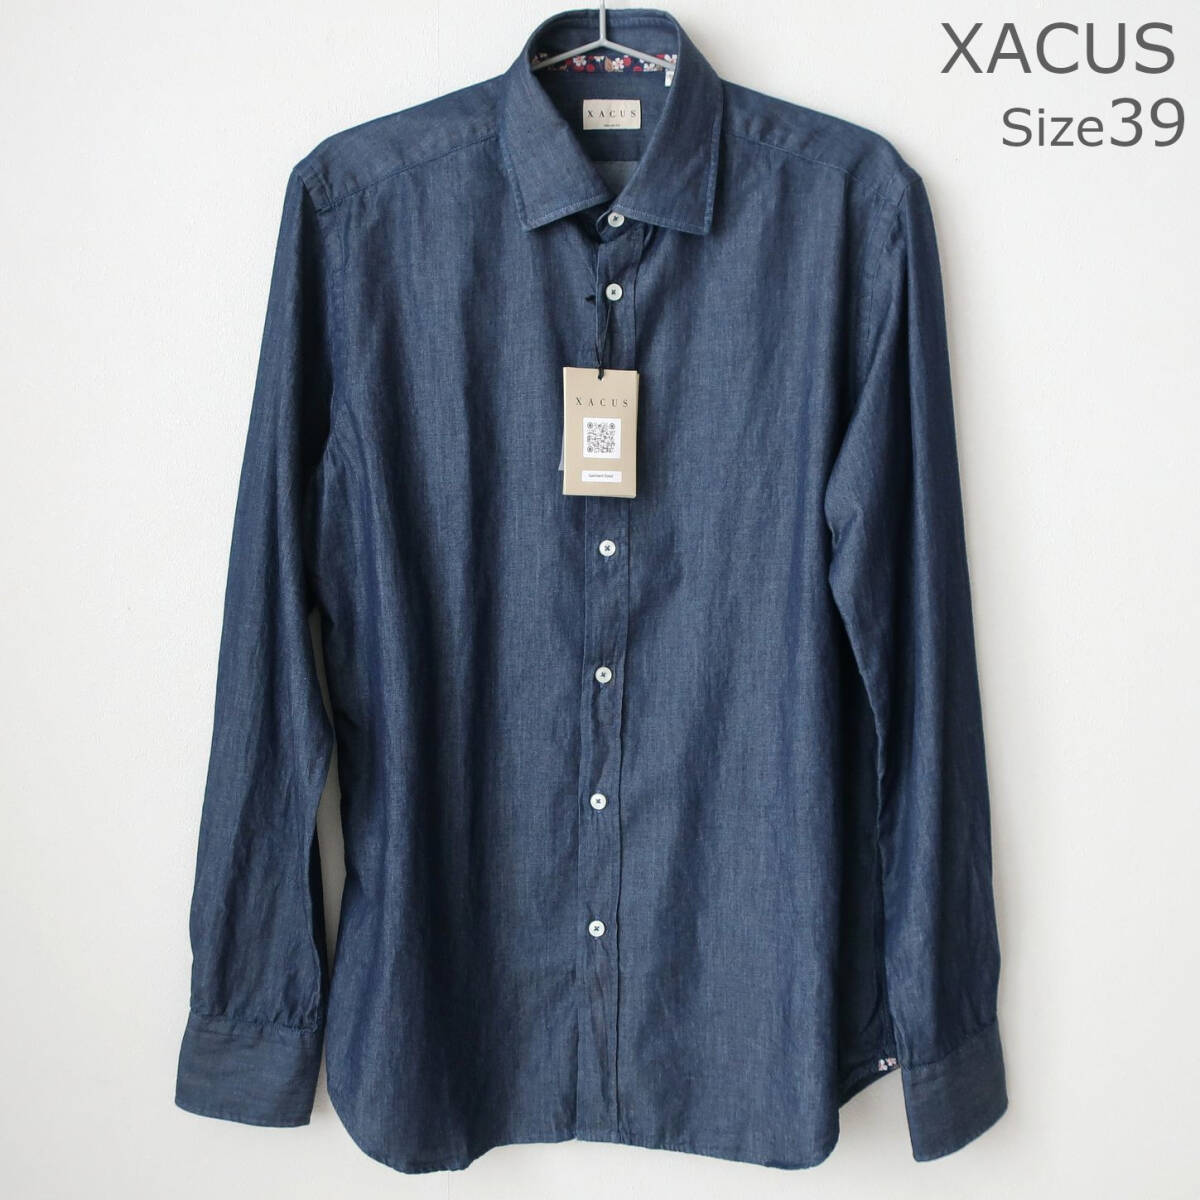 新品 未使用 XACUS ザッカス メンズ デニムシャツ シャンブレー ダンガリーシャツ 長袖 インディゴ ネイビー メンズ 39 Mサイズ Lサイズ